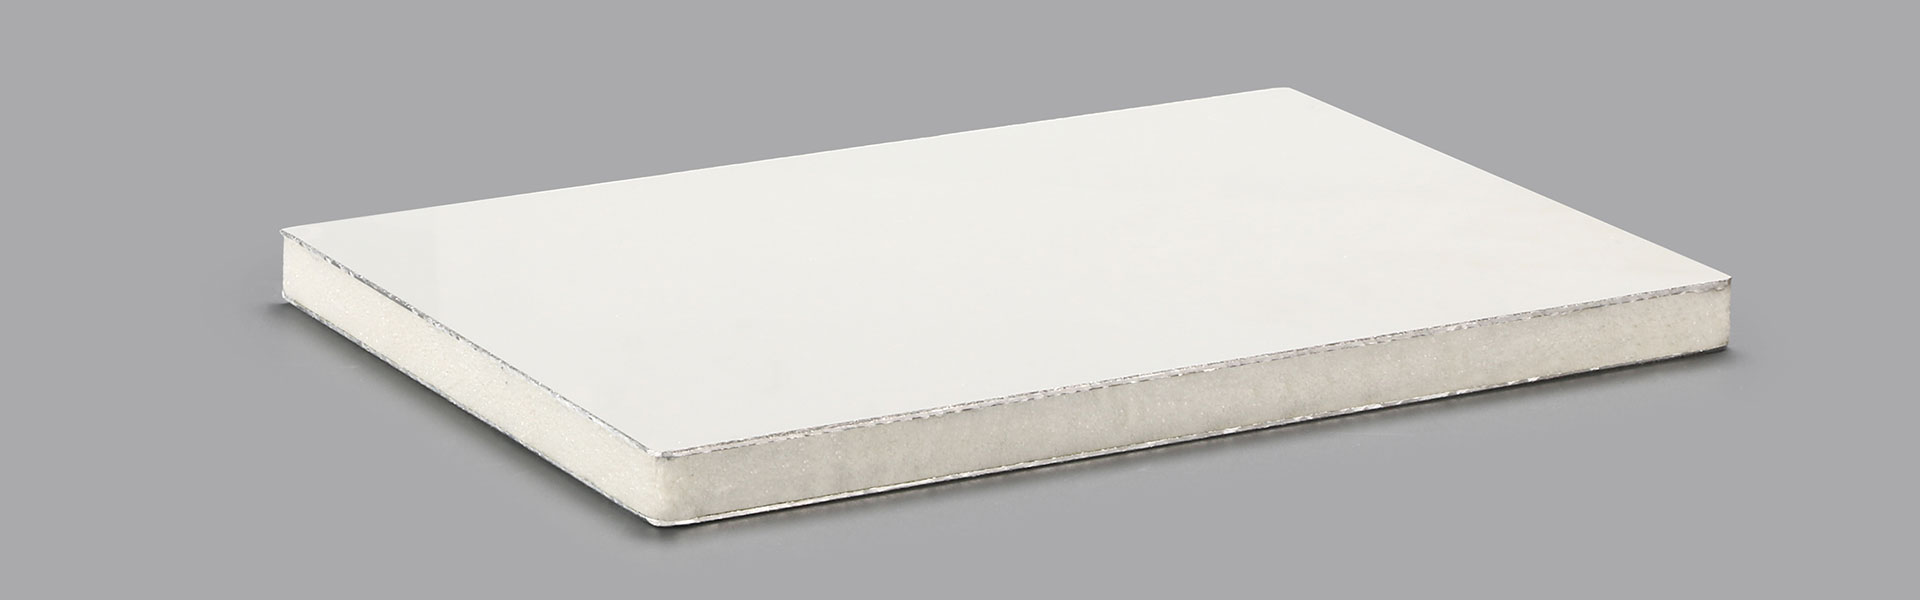 Aluminum PET Sandwich Panels